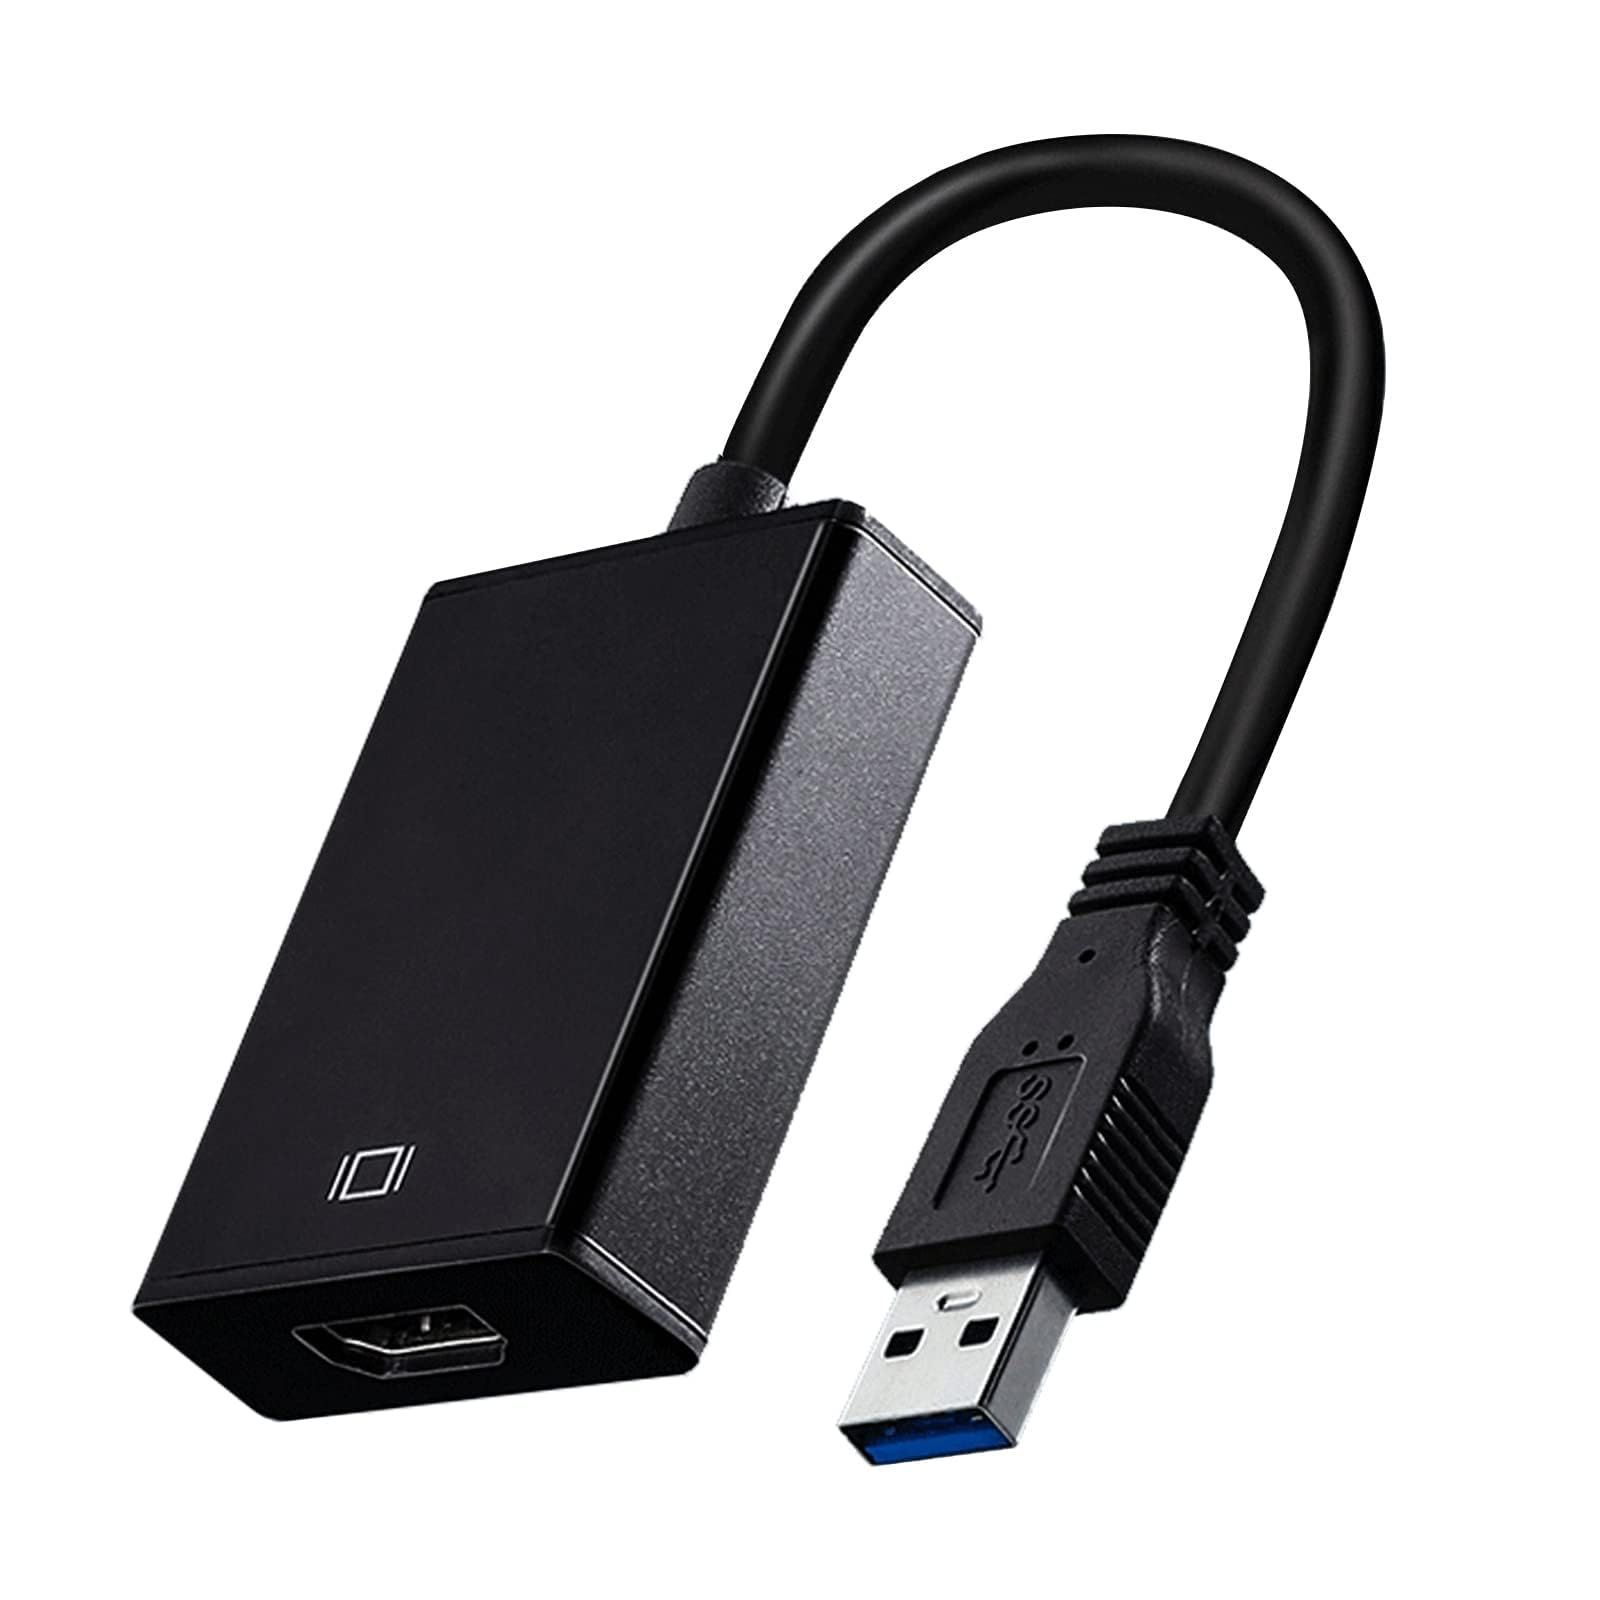 人気商品】USB HDMI 変換アダプタ 5Gbps高速伝送 USB3.0 HDMI 変換 アダプタ 1080P対応 音声出力 ディスプレイ 変換  安定出力 コンパクト 使用簡単 Windows XP/7/8/10/11対応 日本語取扱説明書付属 - メルカリ